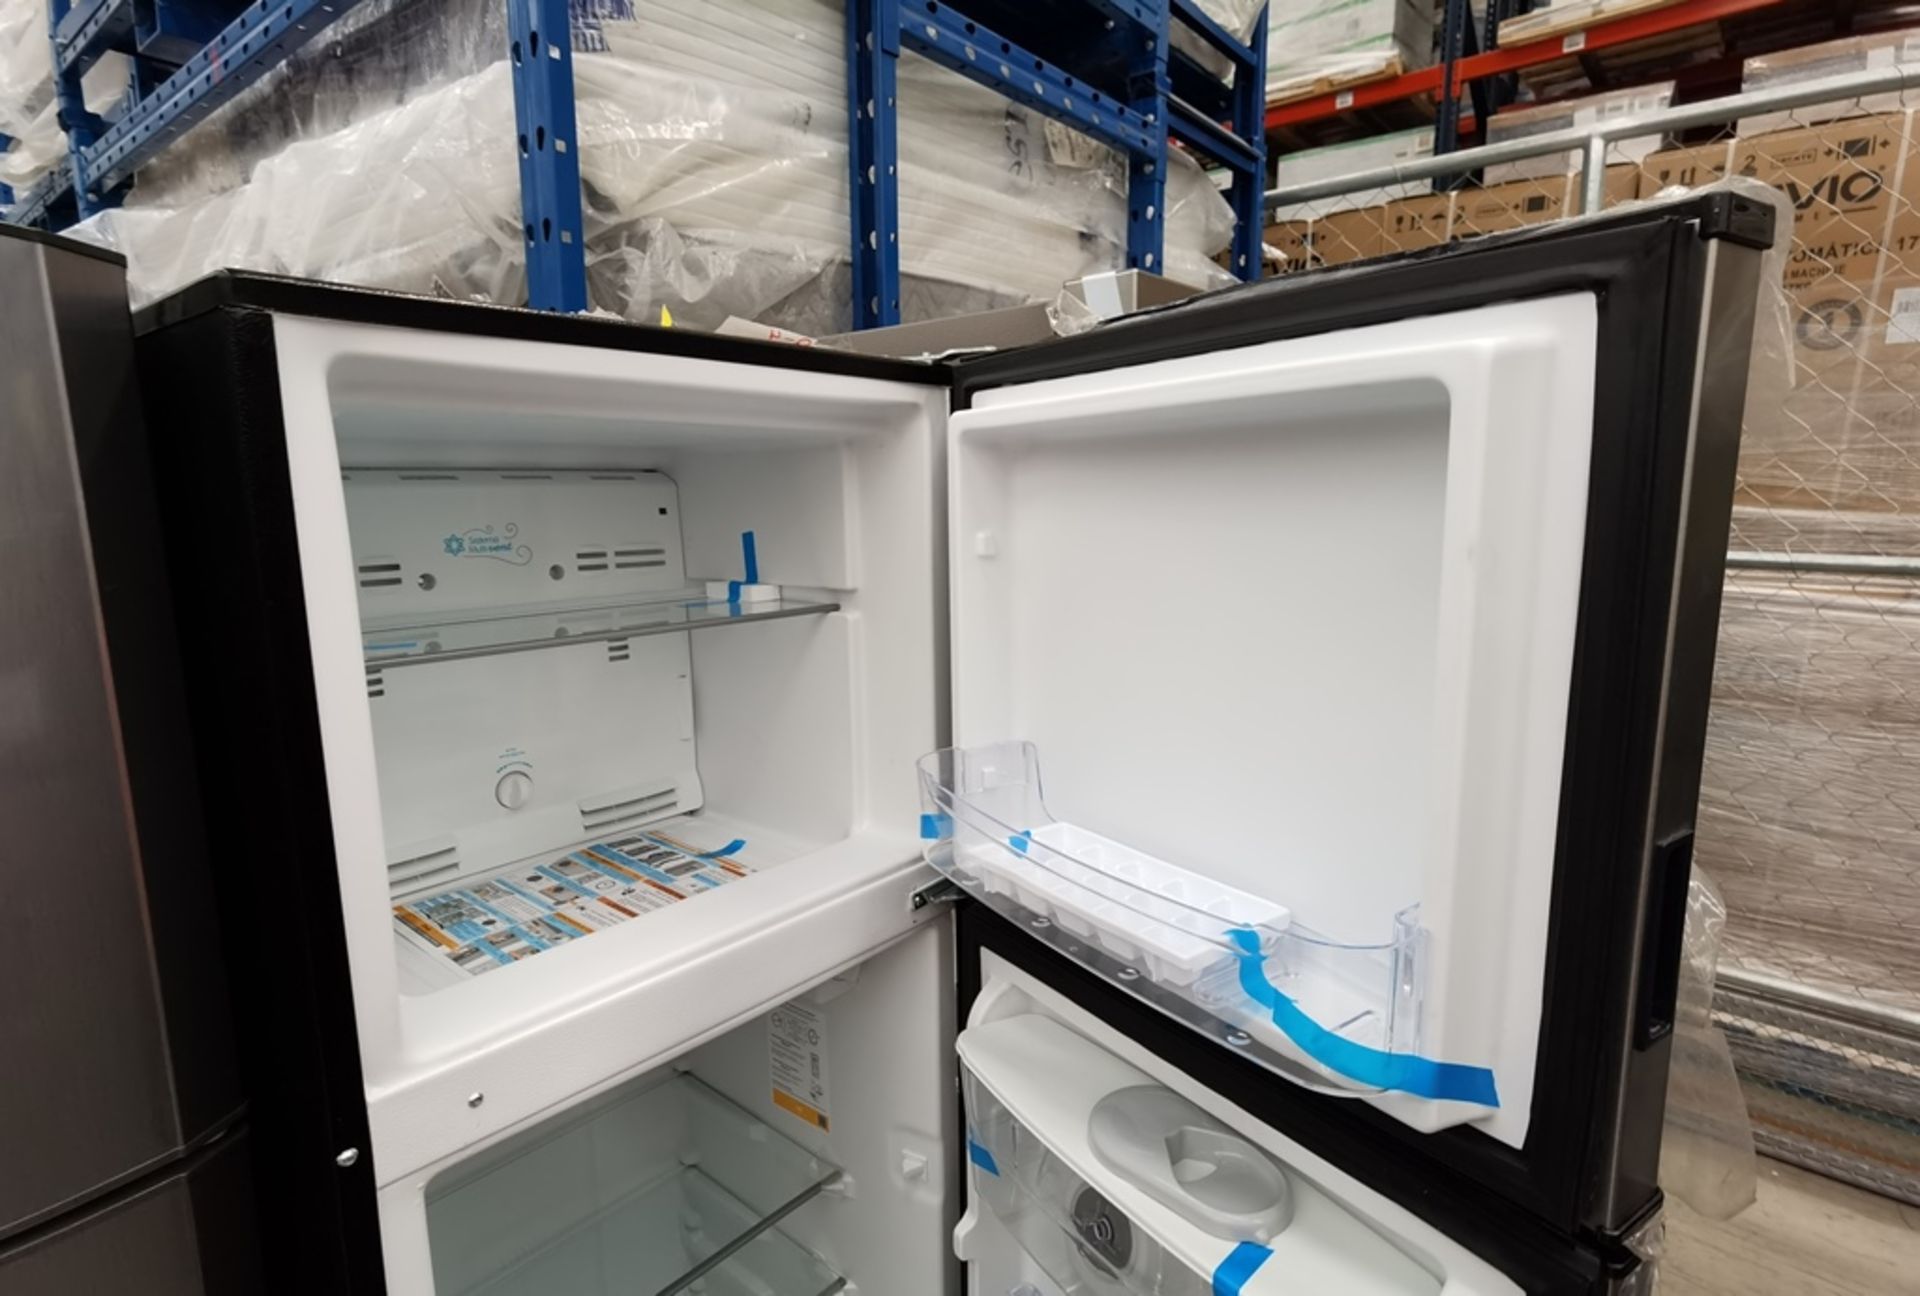 Lote De 2 Refrigeradores Contiene: 1 Refrigerador Marca Across, Modelo AT9007G03, Serie VRB1230980, - Image 13 of 16